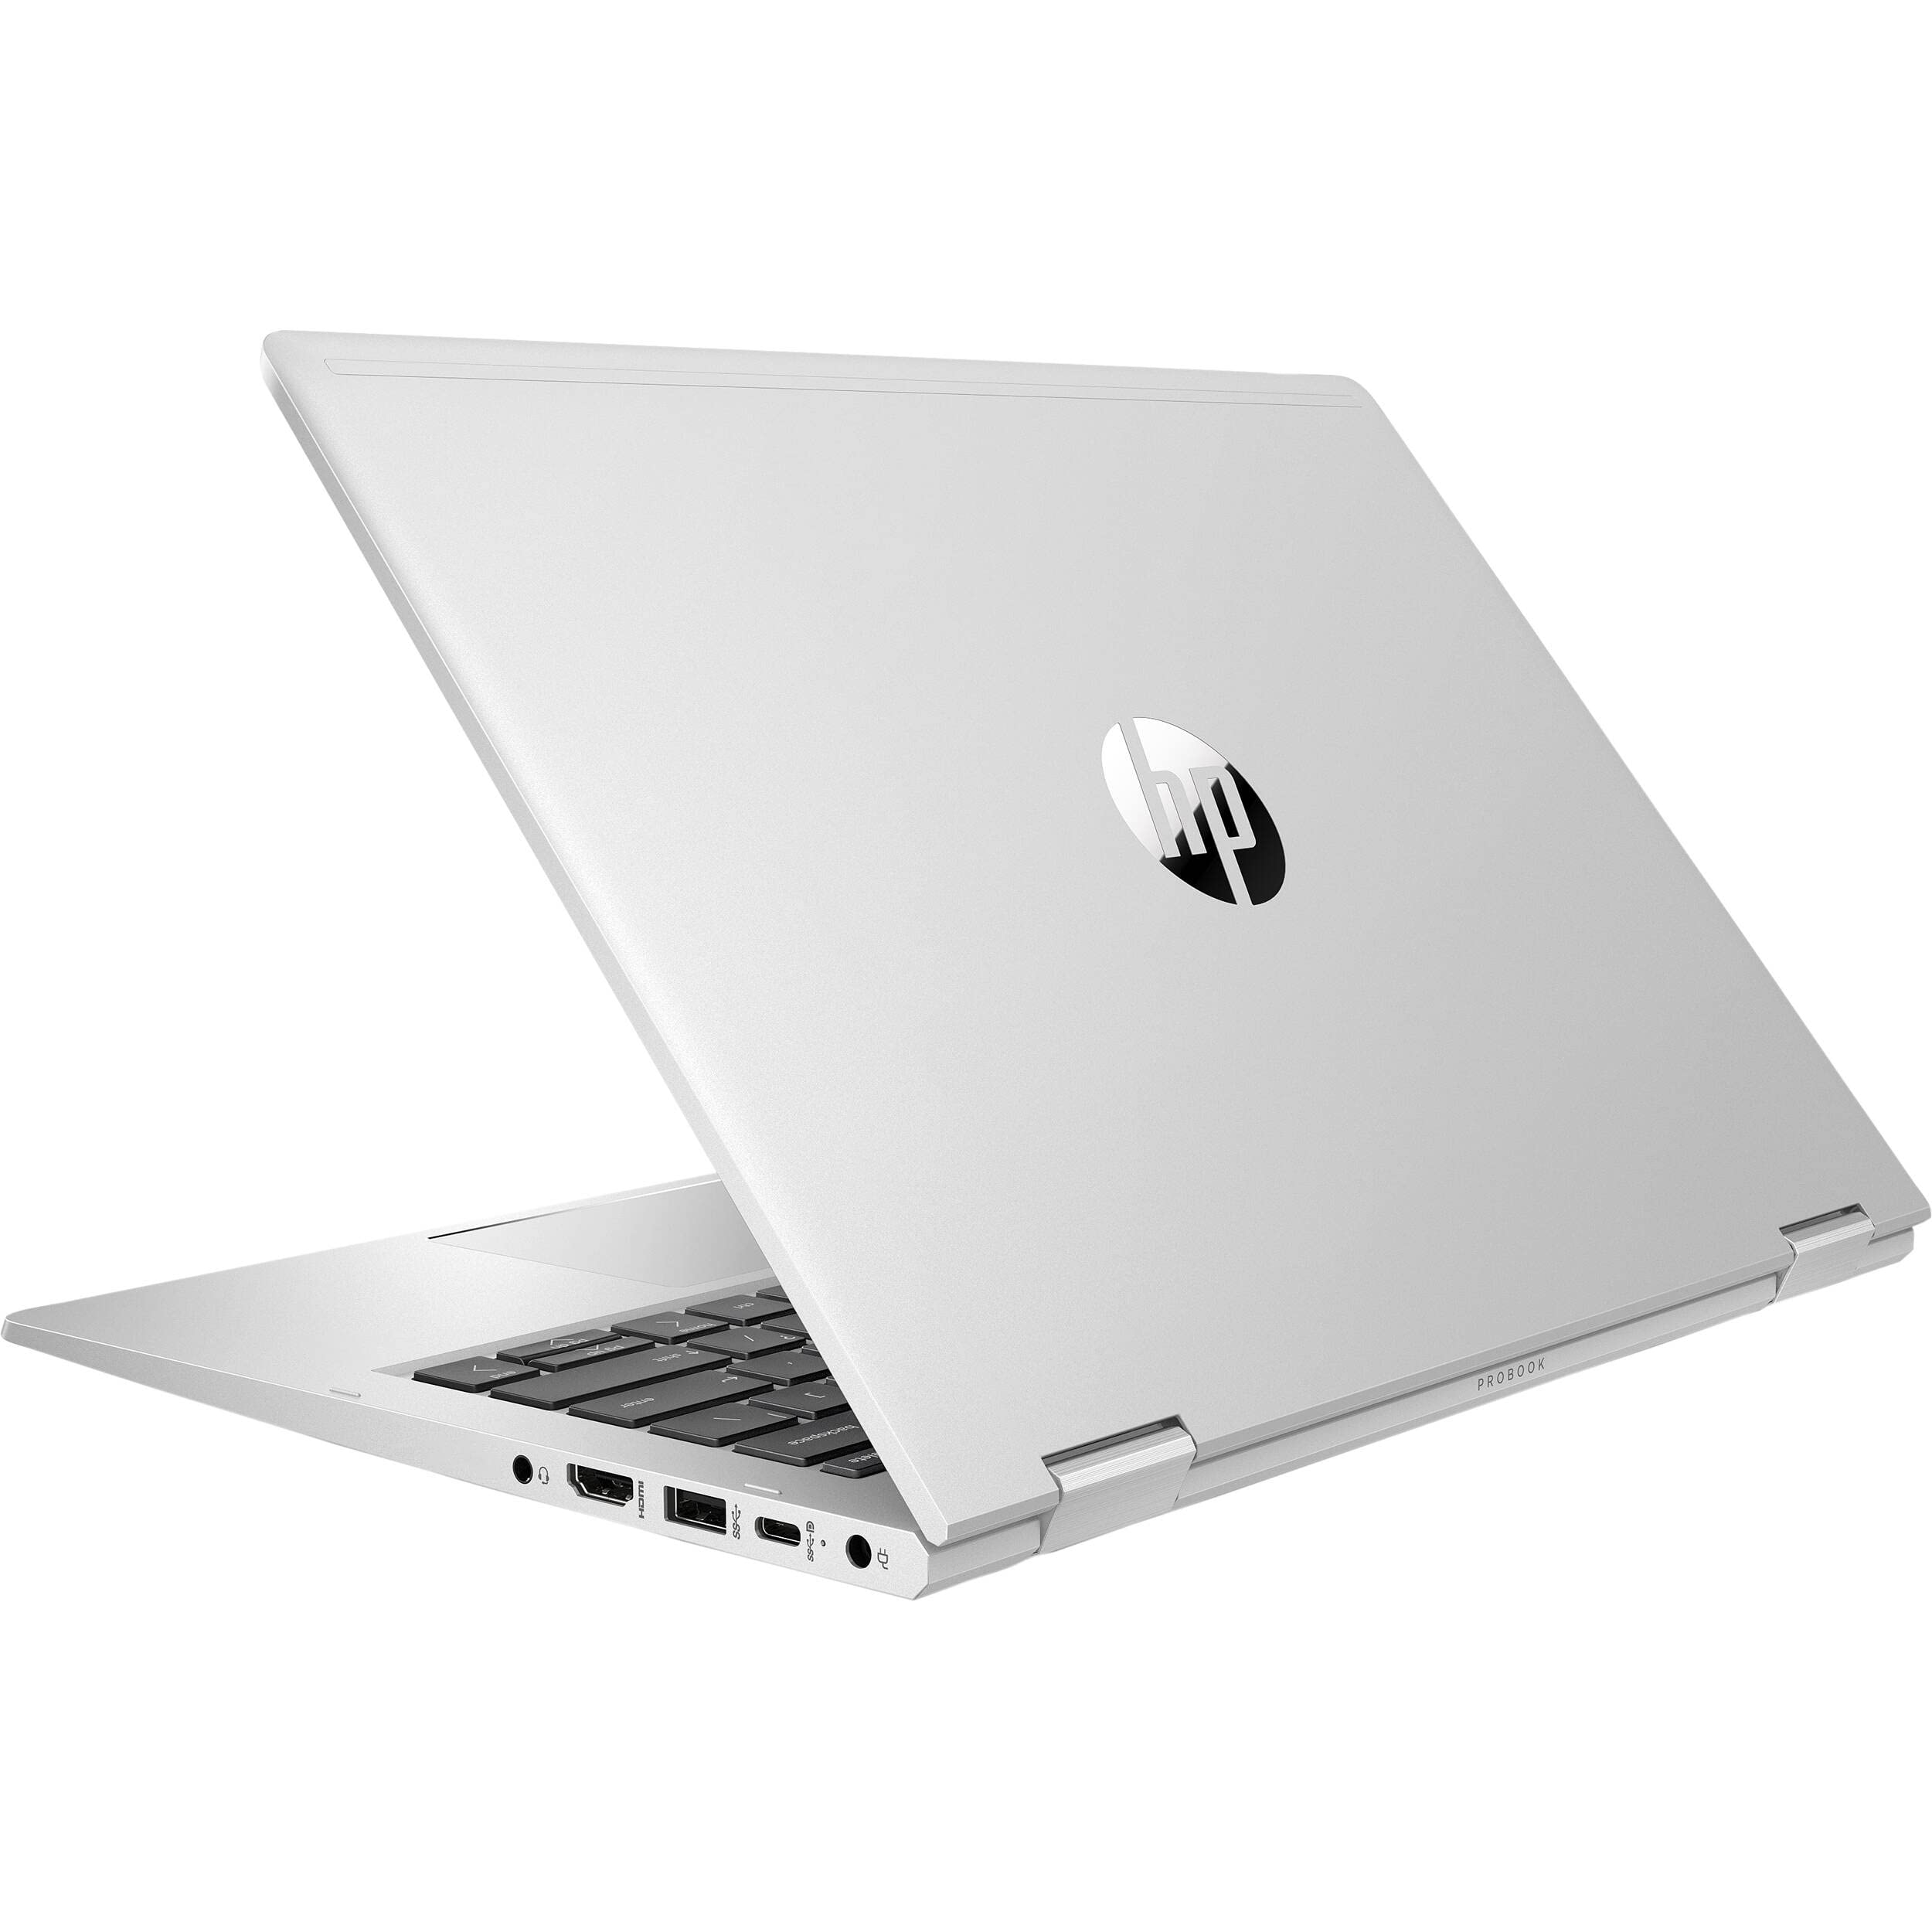 ProBook x360 435 G8 Notebook PC